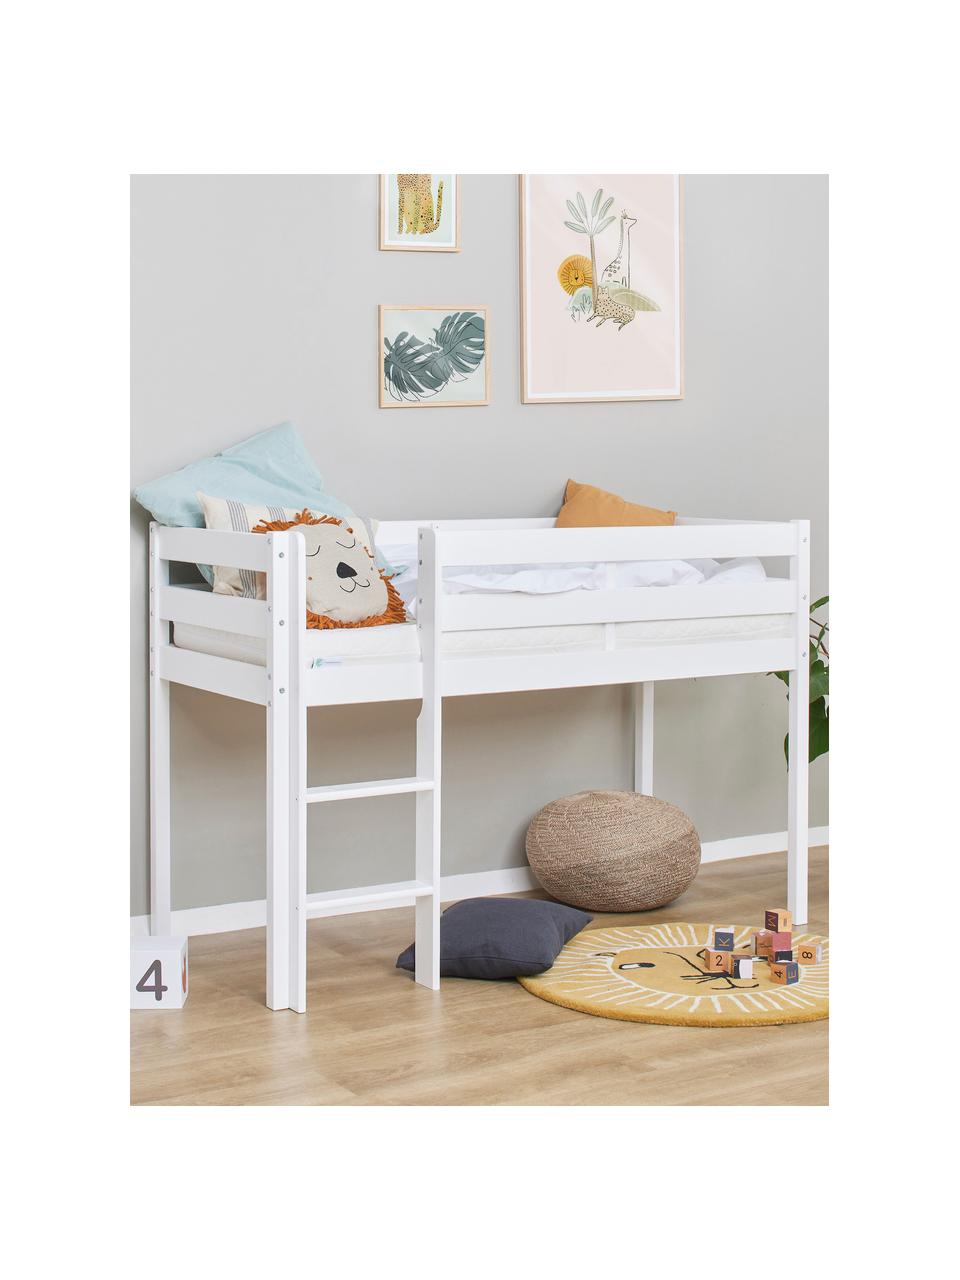 Stredne vysoká detská posteľ Eco Comfort, 70 x 160 cm, Masívne borovicové drevo, s FSC certifikátom, vrstvené drevo, Biela, Š 70 x D 160 x V 114 cm